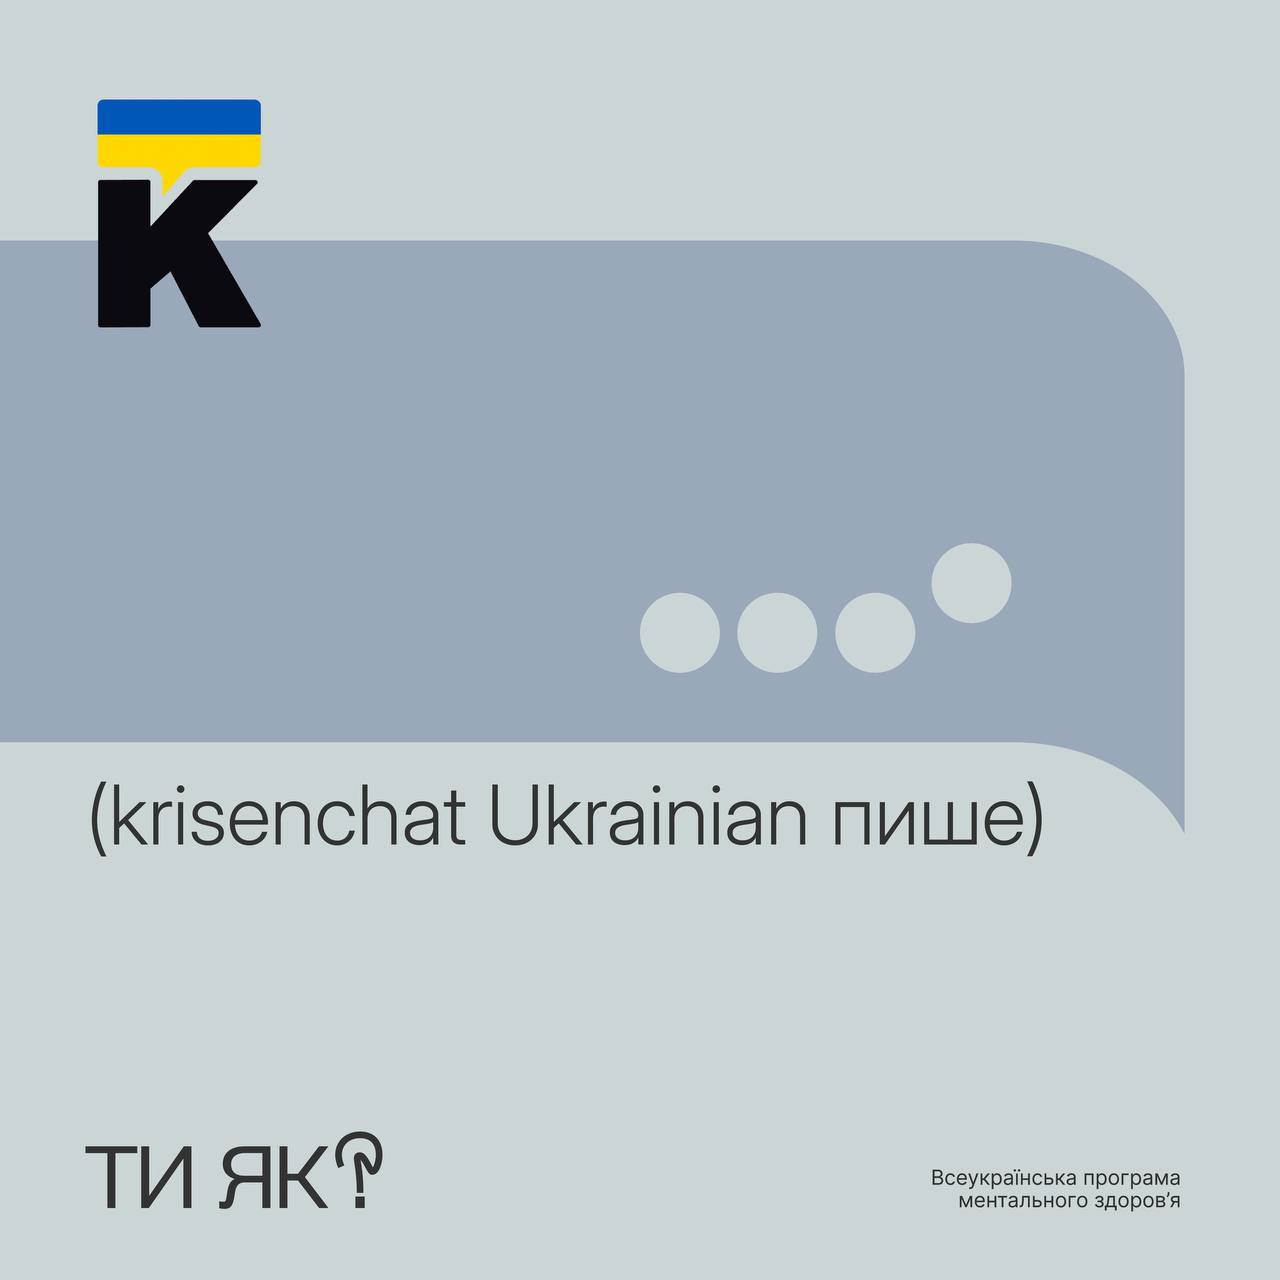 Кrisenchat Ukrainian — це психологічна підтримка для дітей, підлітків та дорослих у форматі чату